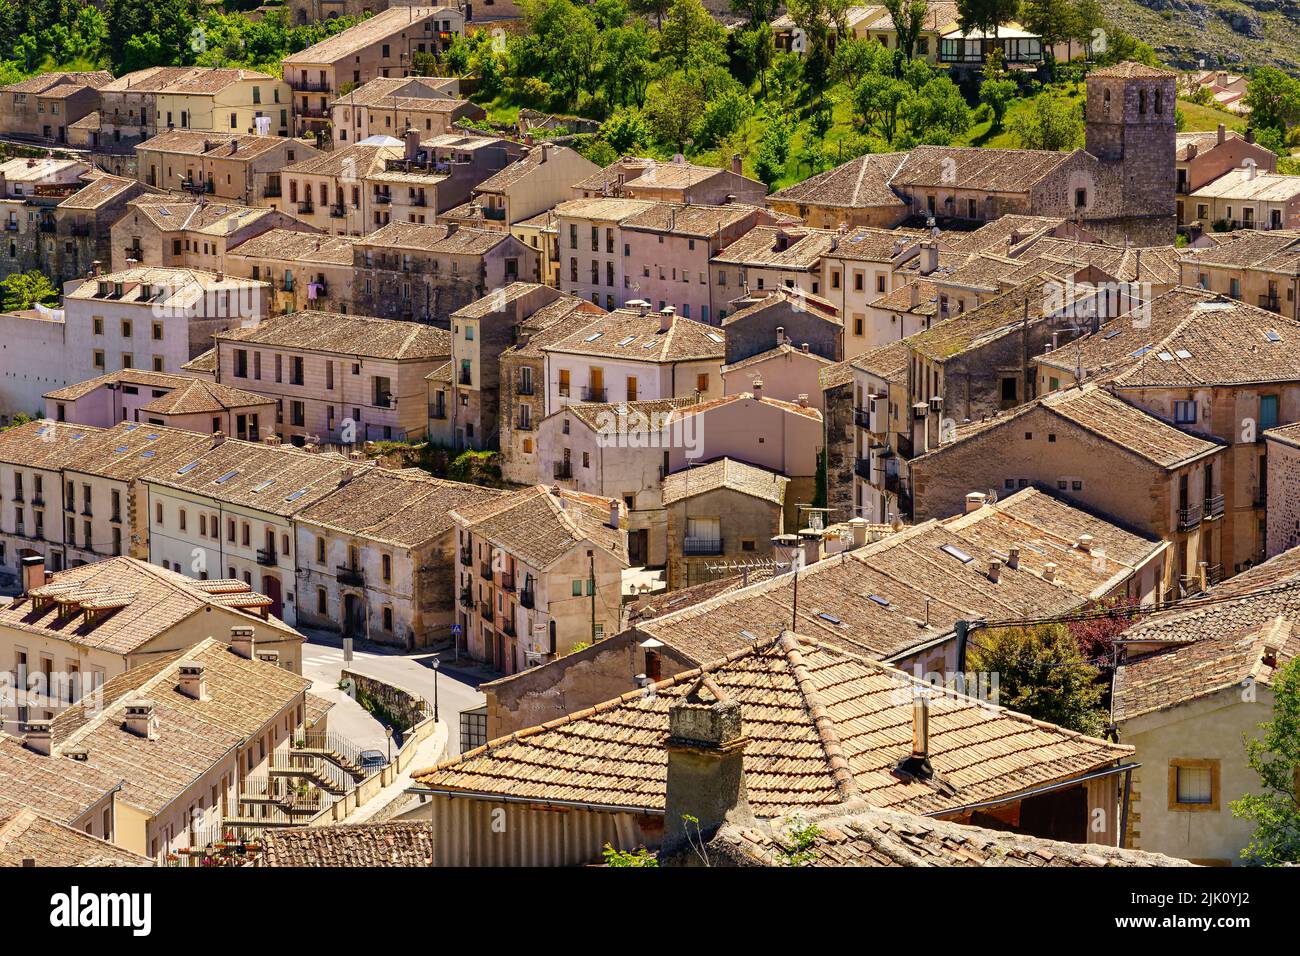 Vista aerea di una città medievale con i suoi vecchi tetti in tegole e le strette stradine. Sepulveda Castilla. Foto Stock